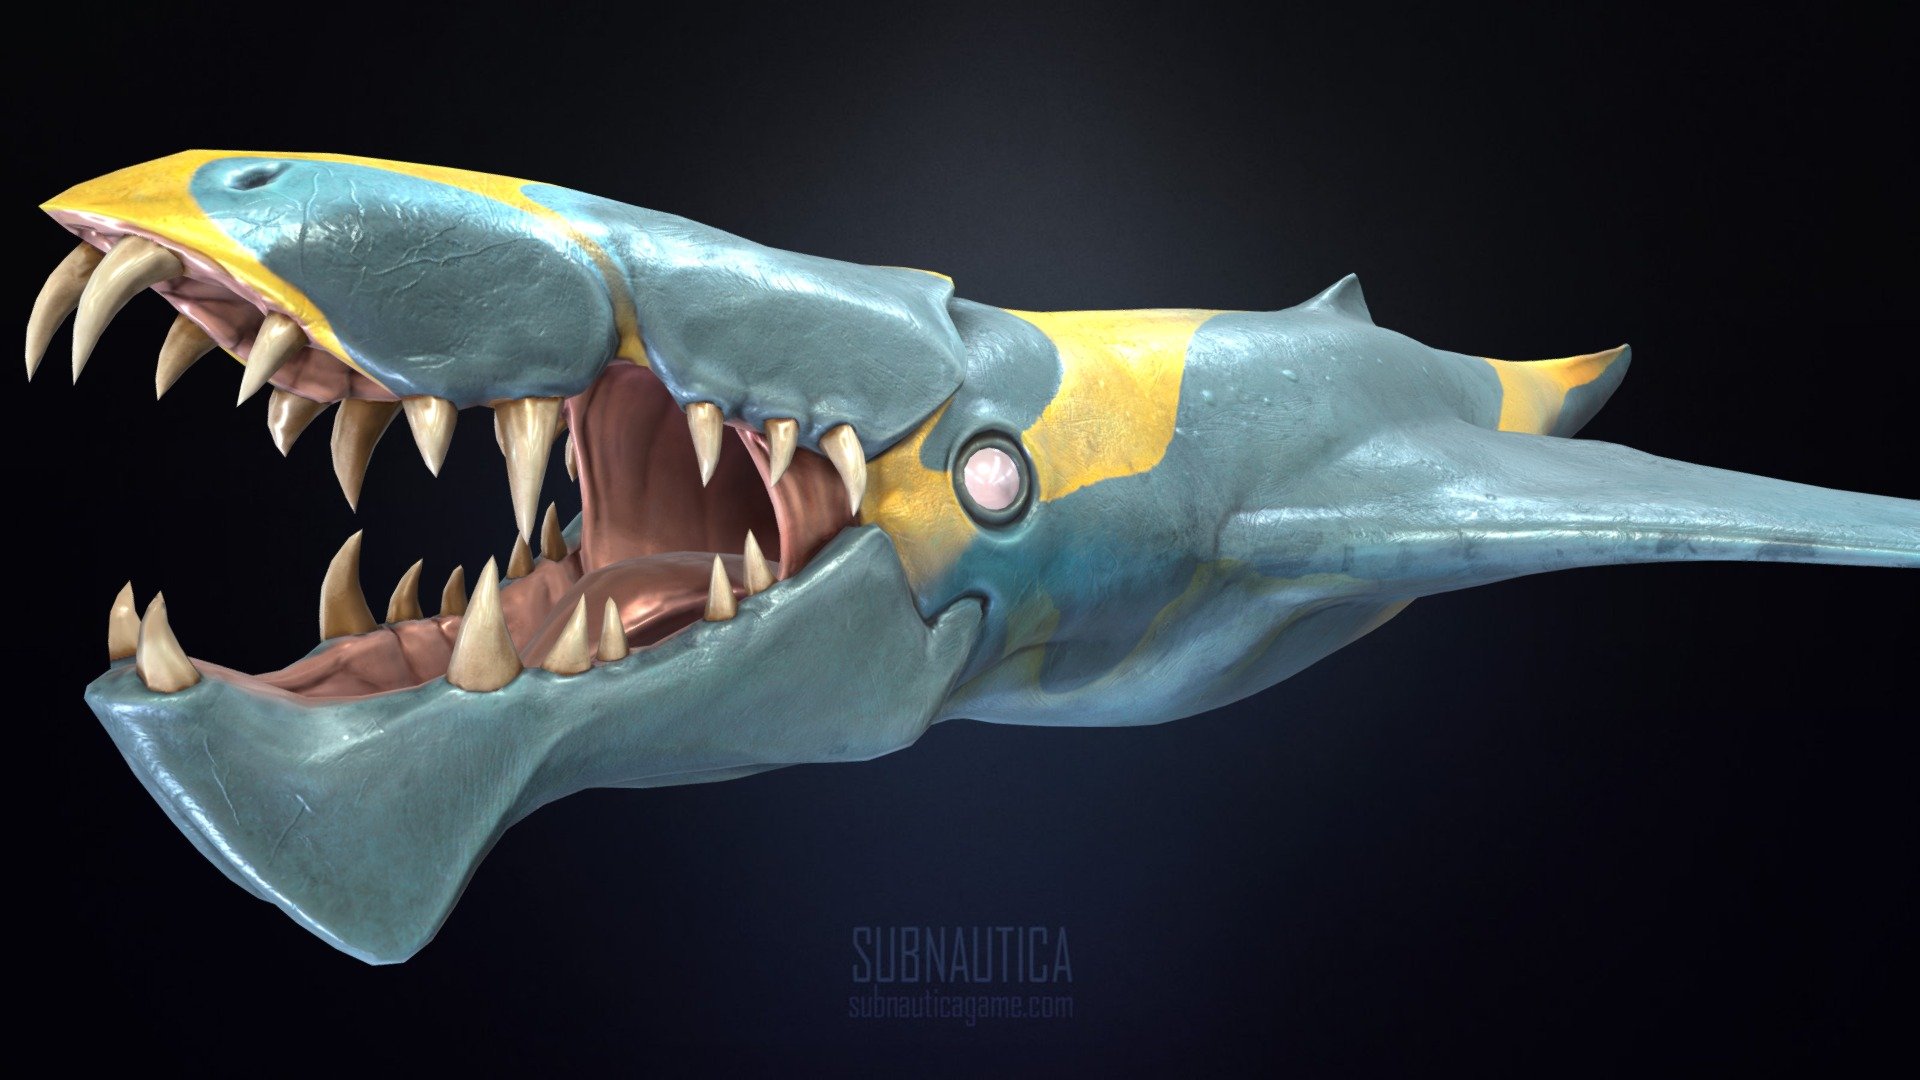 https://store.steampowered.com/app/264710/Subnautica/ - Brute_Shark final - 3D model by Fox3D 3d model